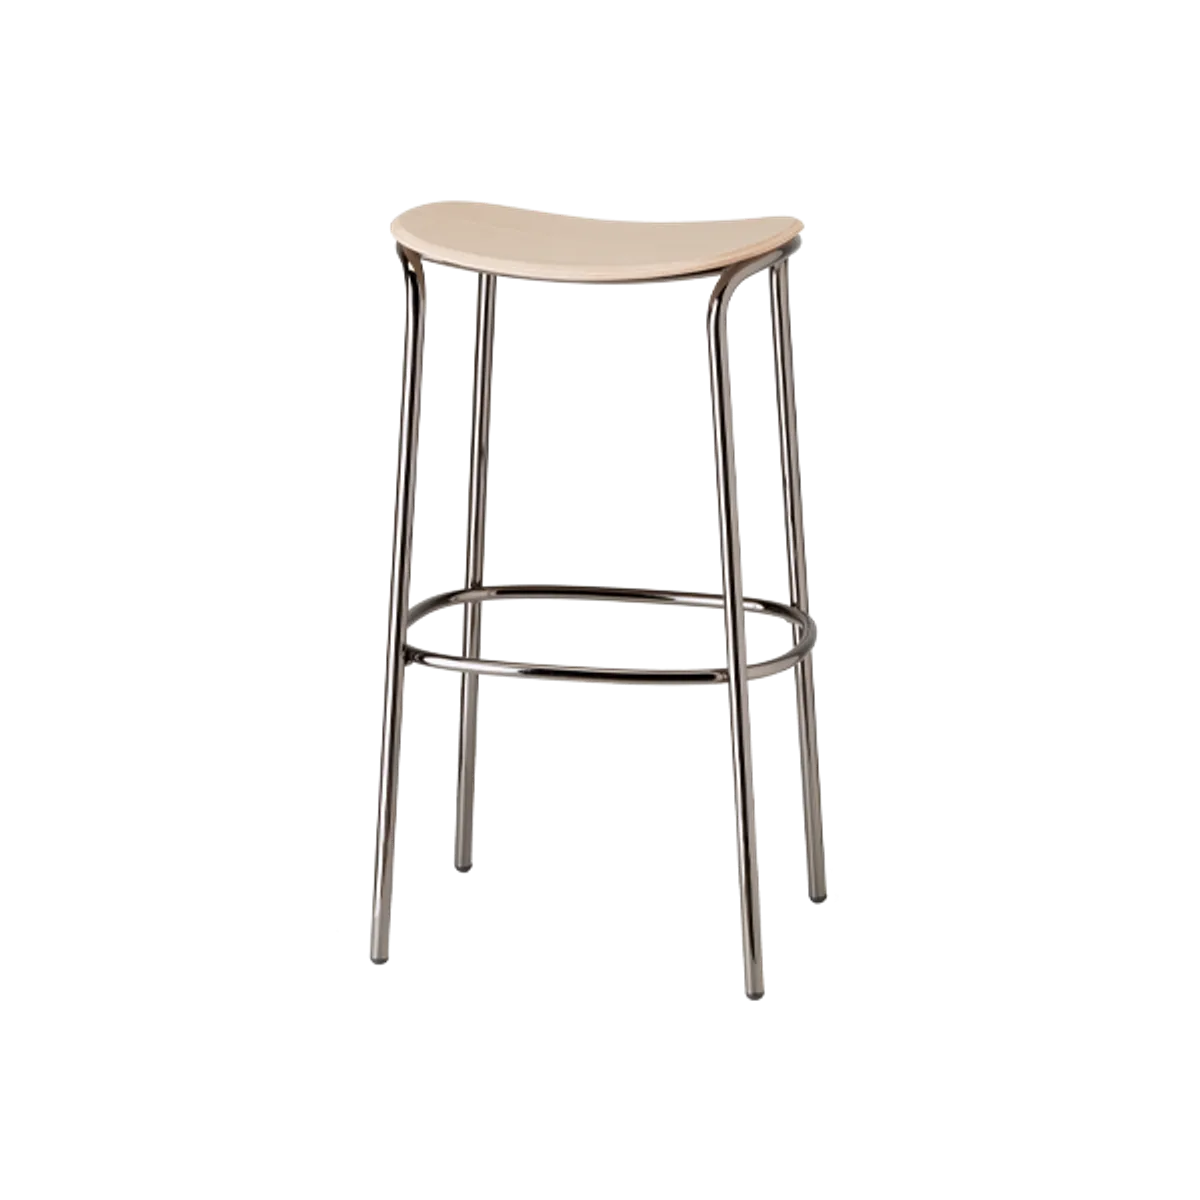 Blaine wood stool